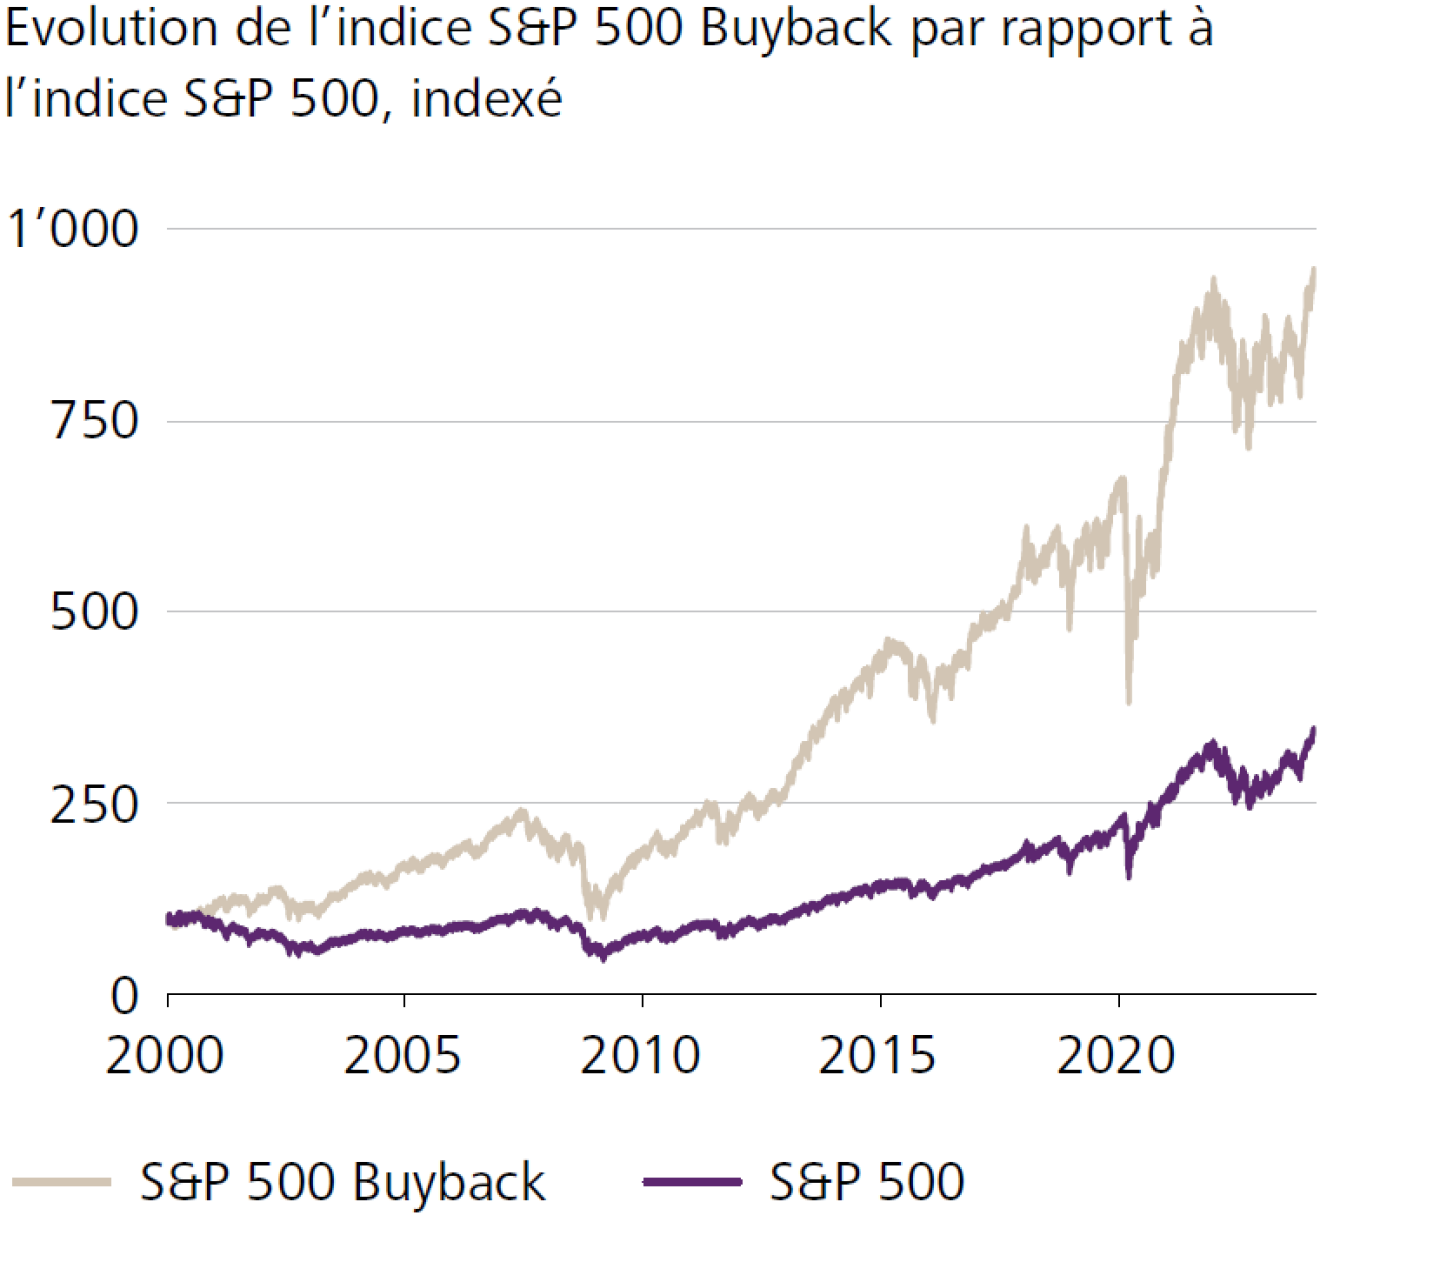 Evolution de l'indice S&P 500 Buyback par rapport à l'indice S&P 500, indexé